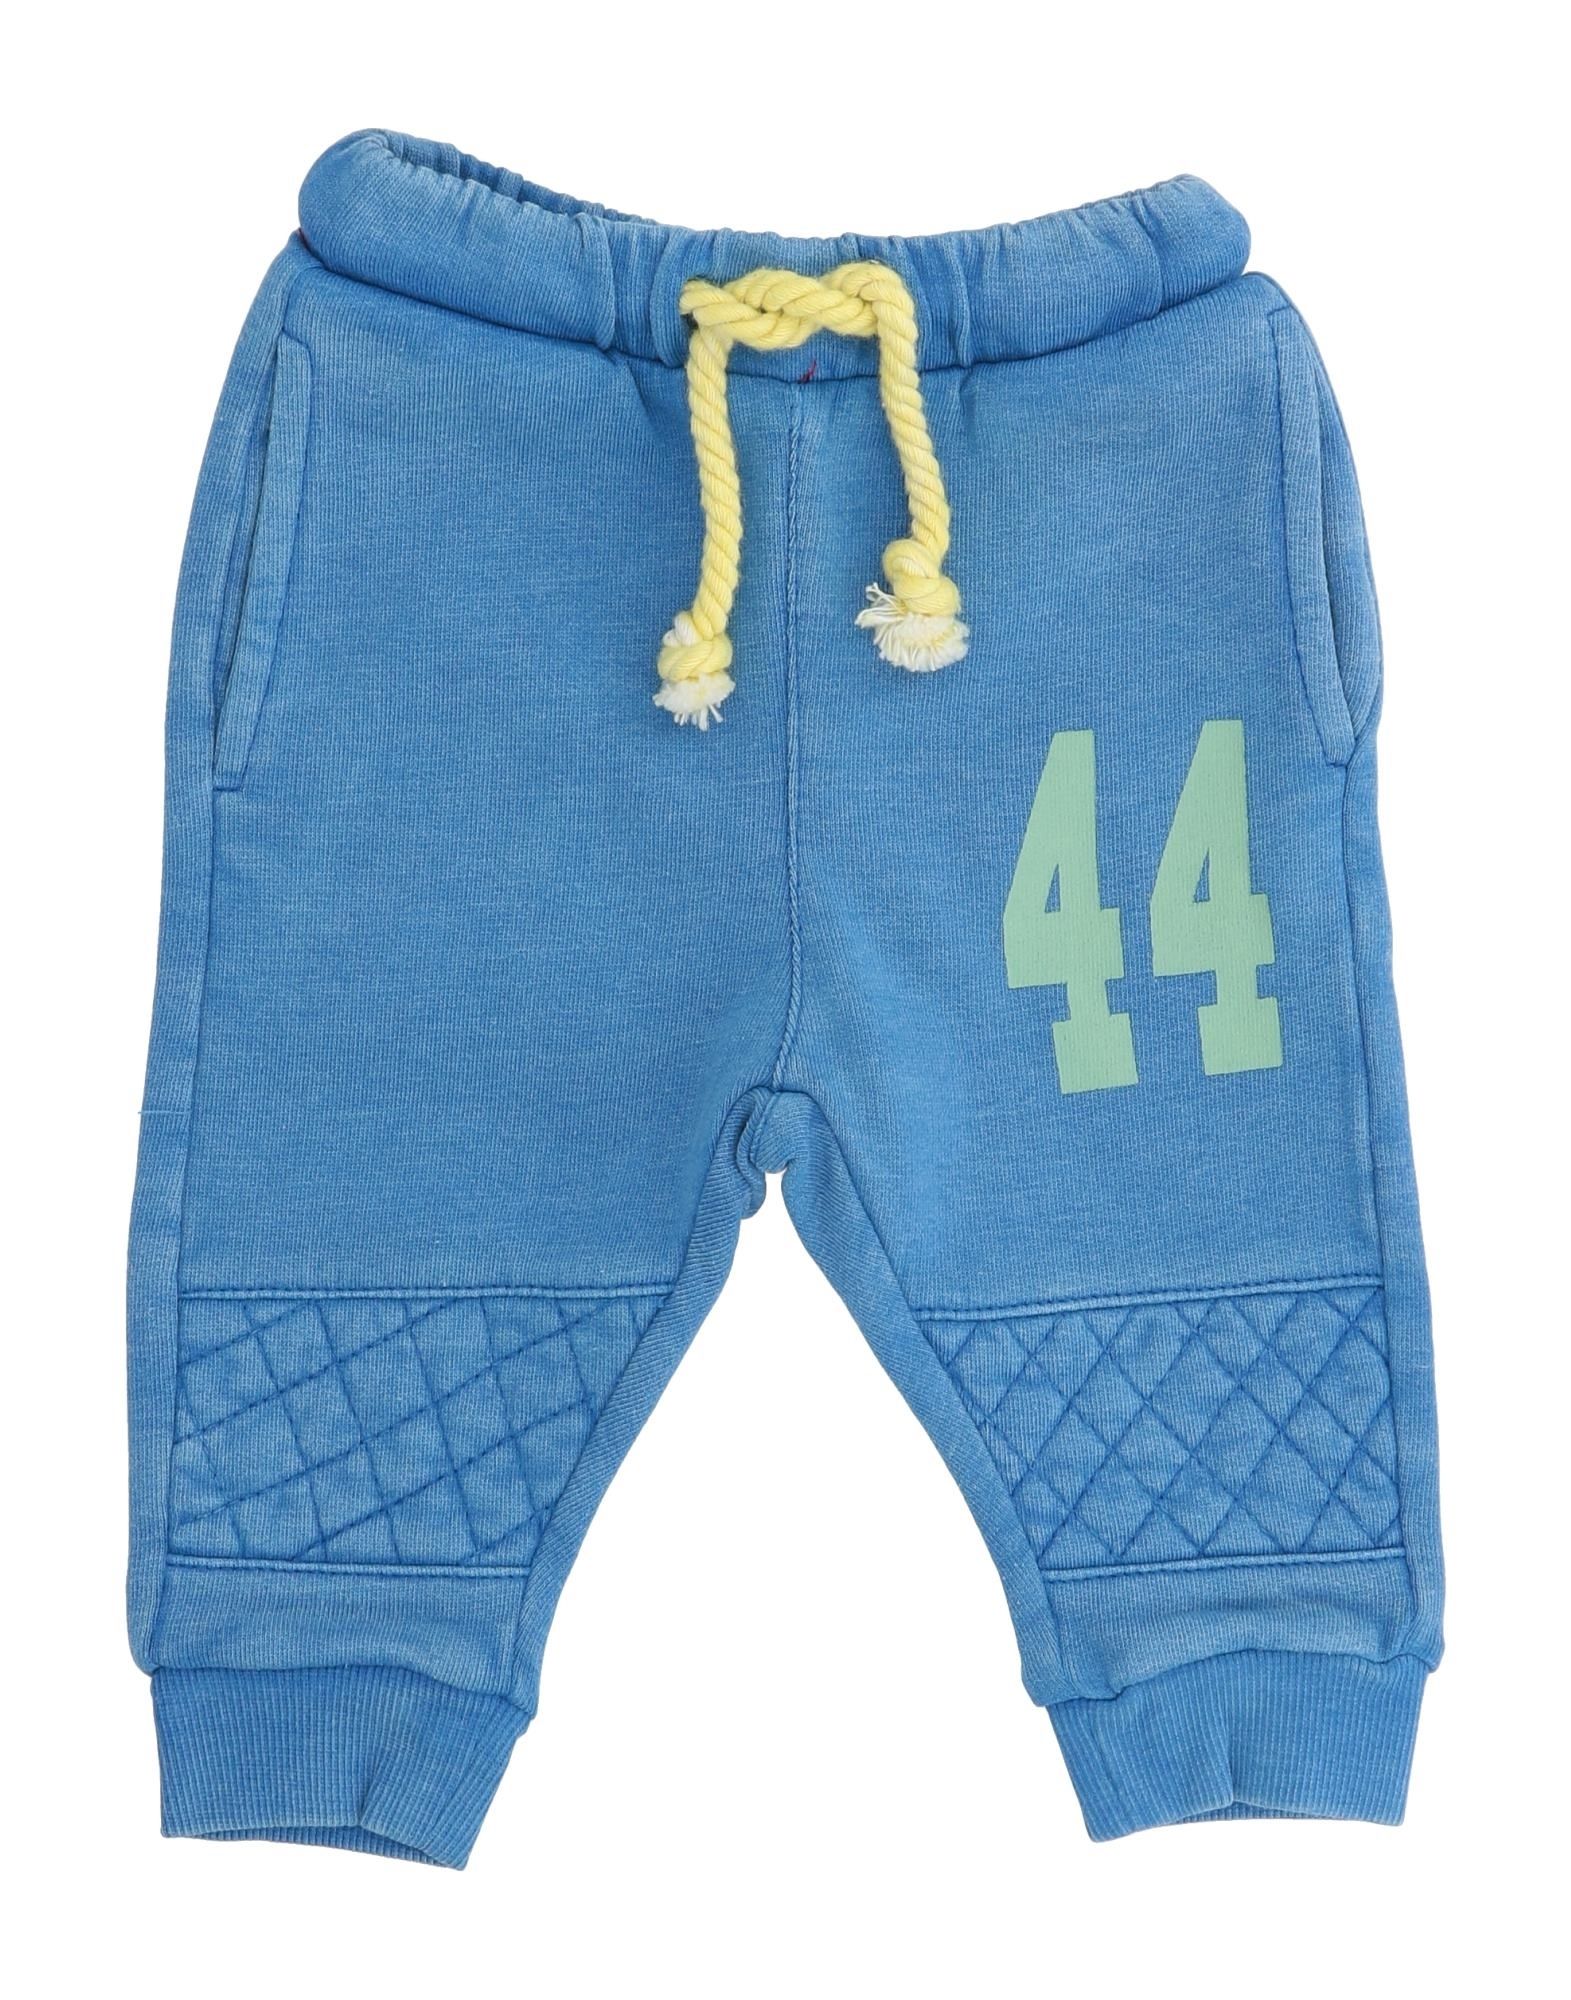 Sp1 Kids' Pants In Blue